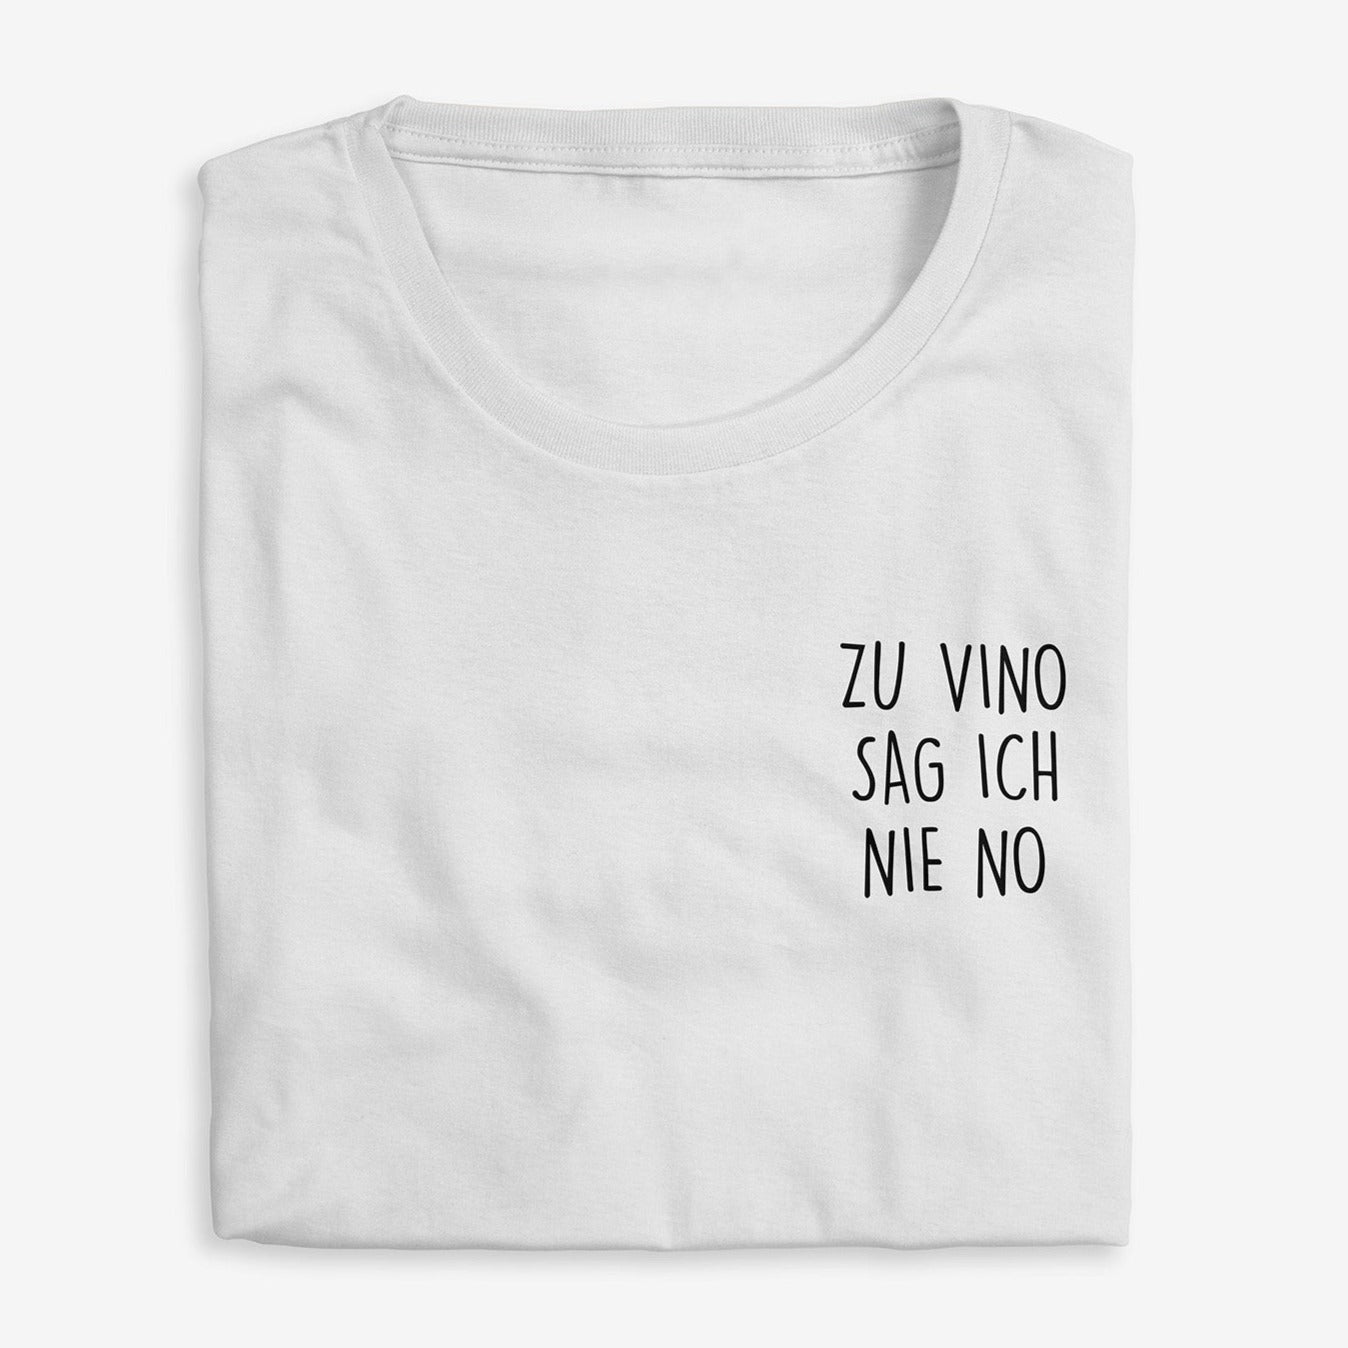 Zu Vino sag ich nie no Tshirt Herren - Weinspirits